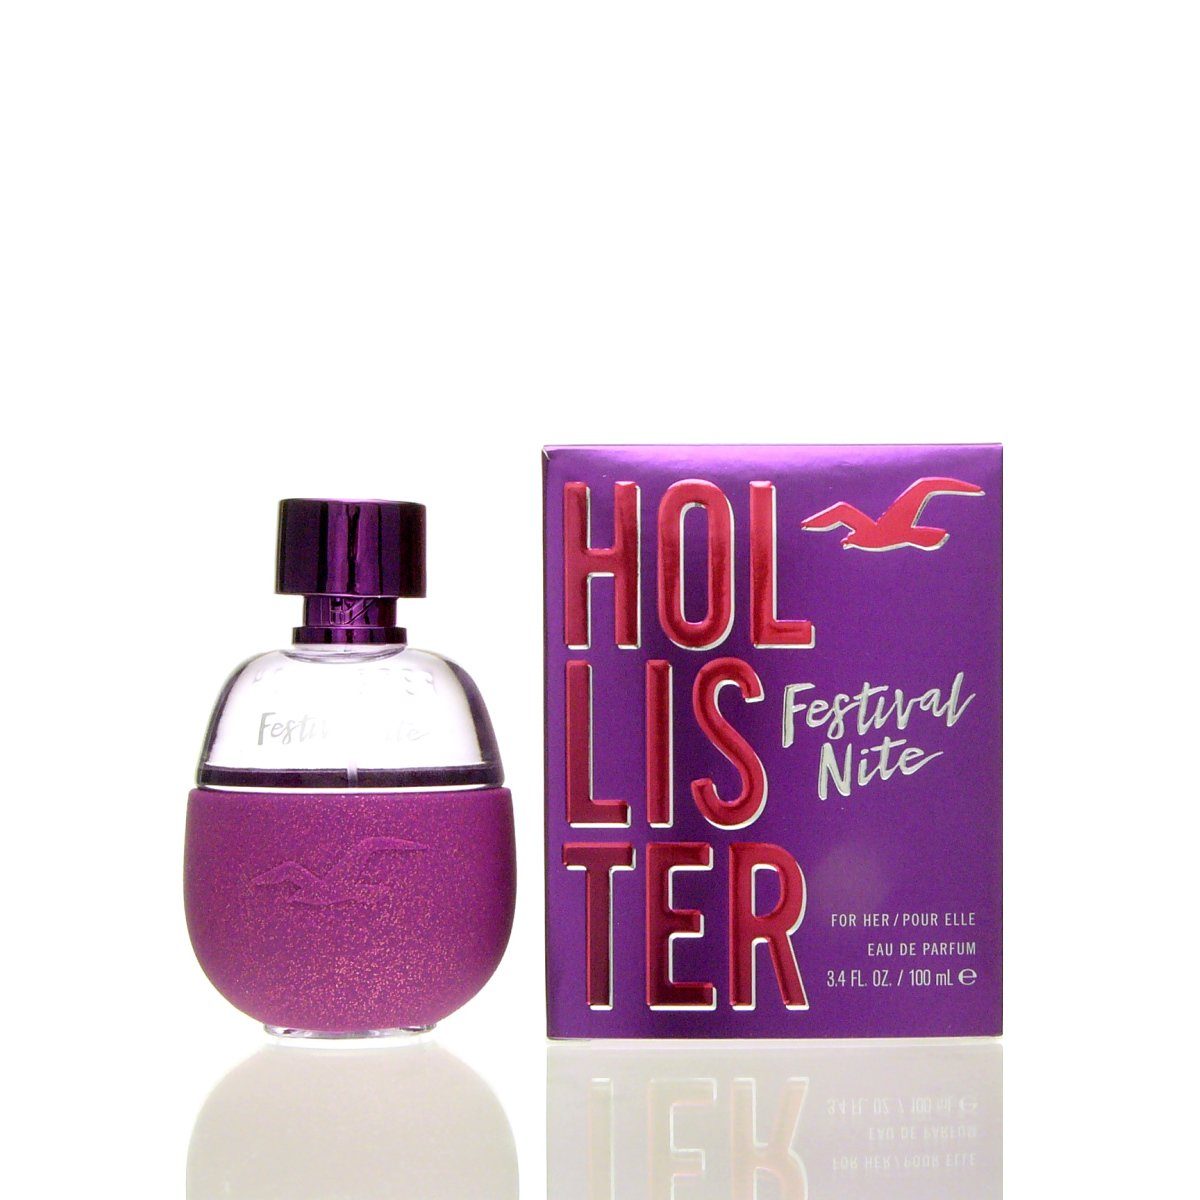 HOLLISTER Eau de Parfum Hollister Eau Nite Festival Parfum For ml 100 de Her